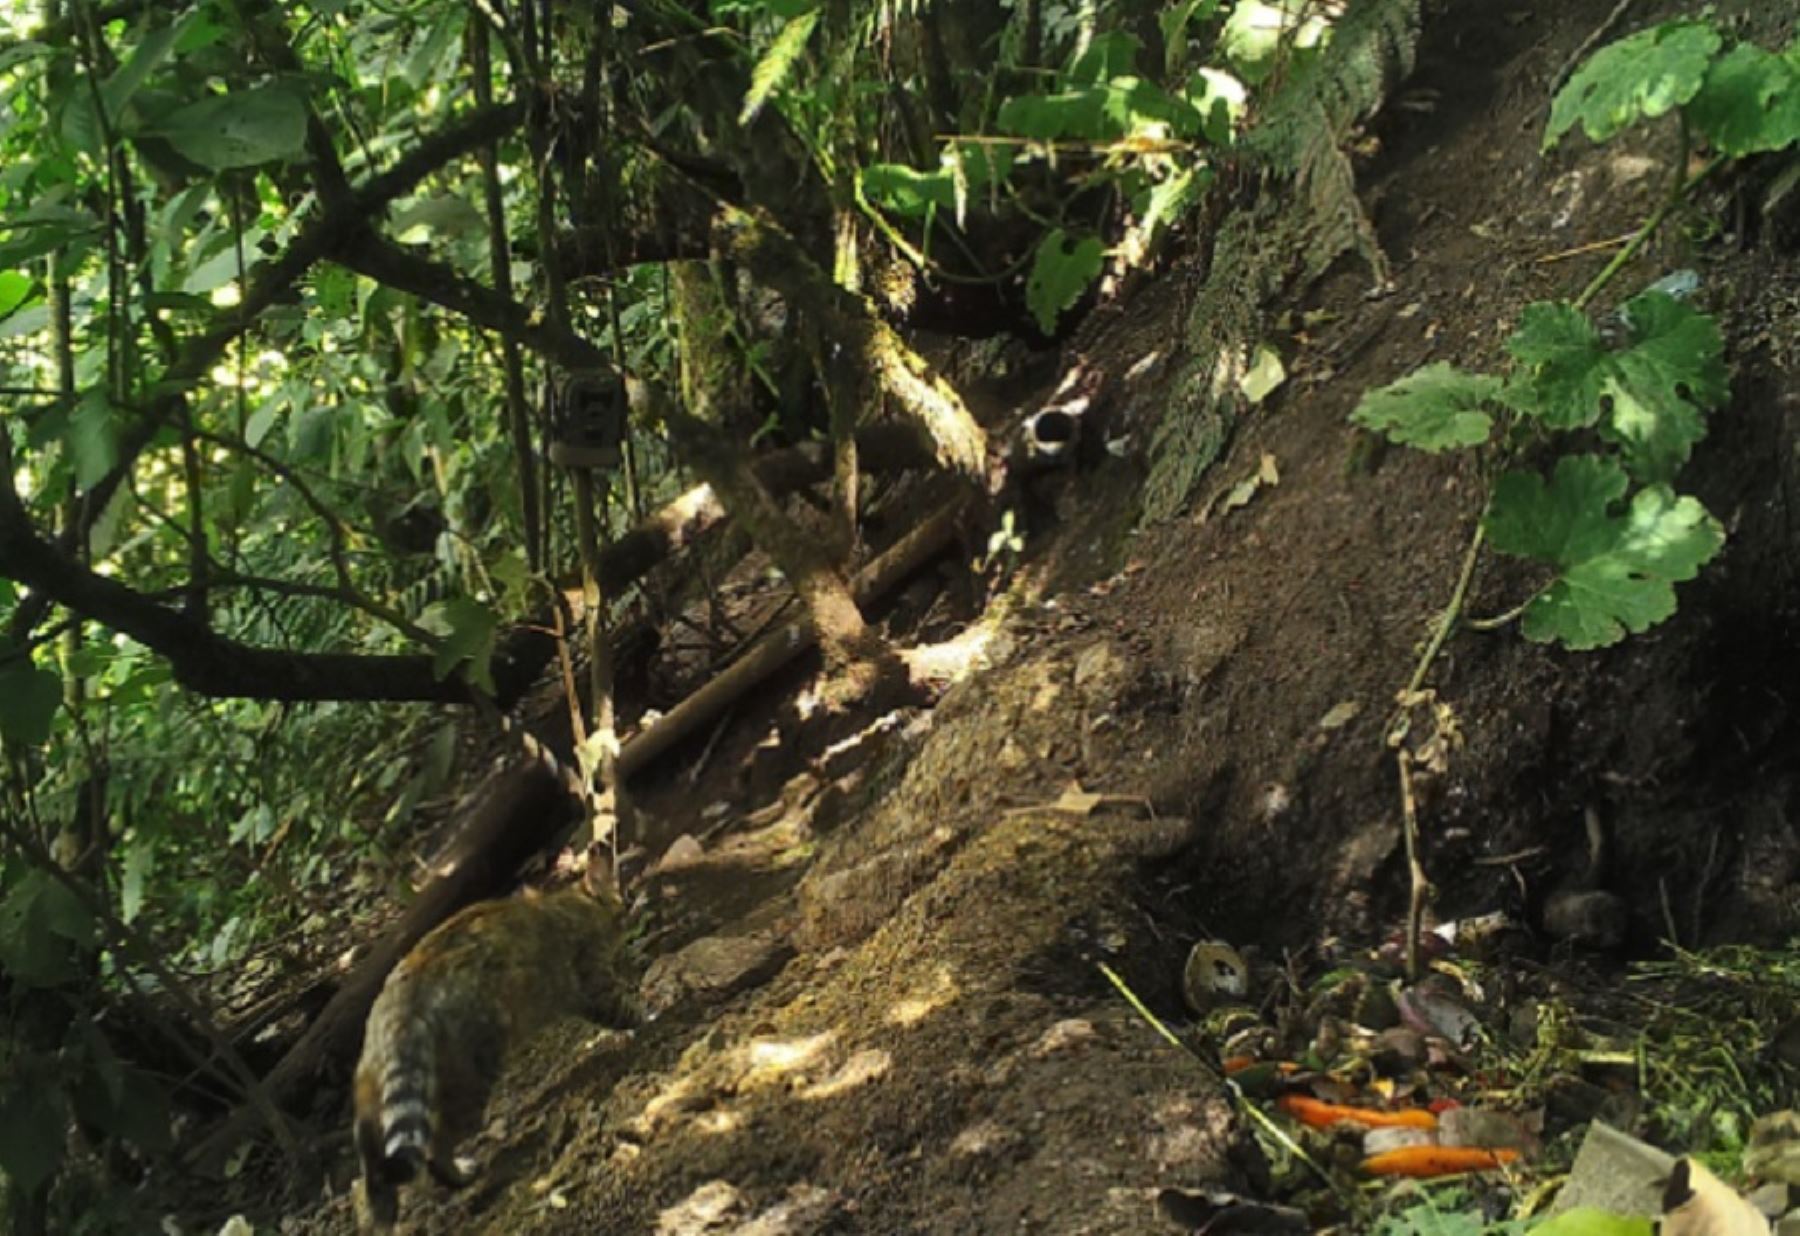 Por primera vez se realizó el registro en cámara de un ocelote, conocido también como tigrillo, en el Santuario Histórico de Machu Picchu, convirtiéndose así en el segundo lugar de mayor altitud en el que se encuentra esta especie de felino silvestre en el Perú. Foto: Sernanp